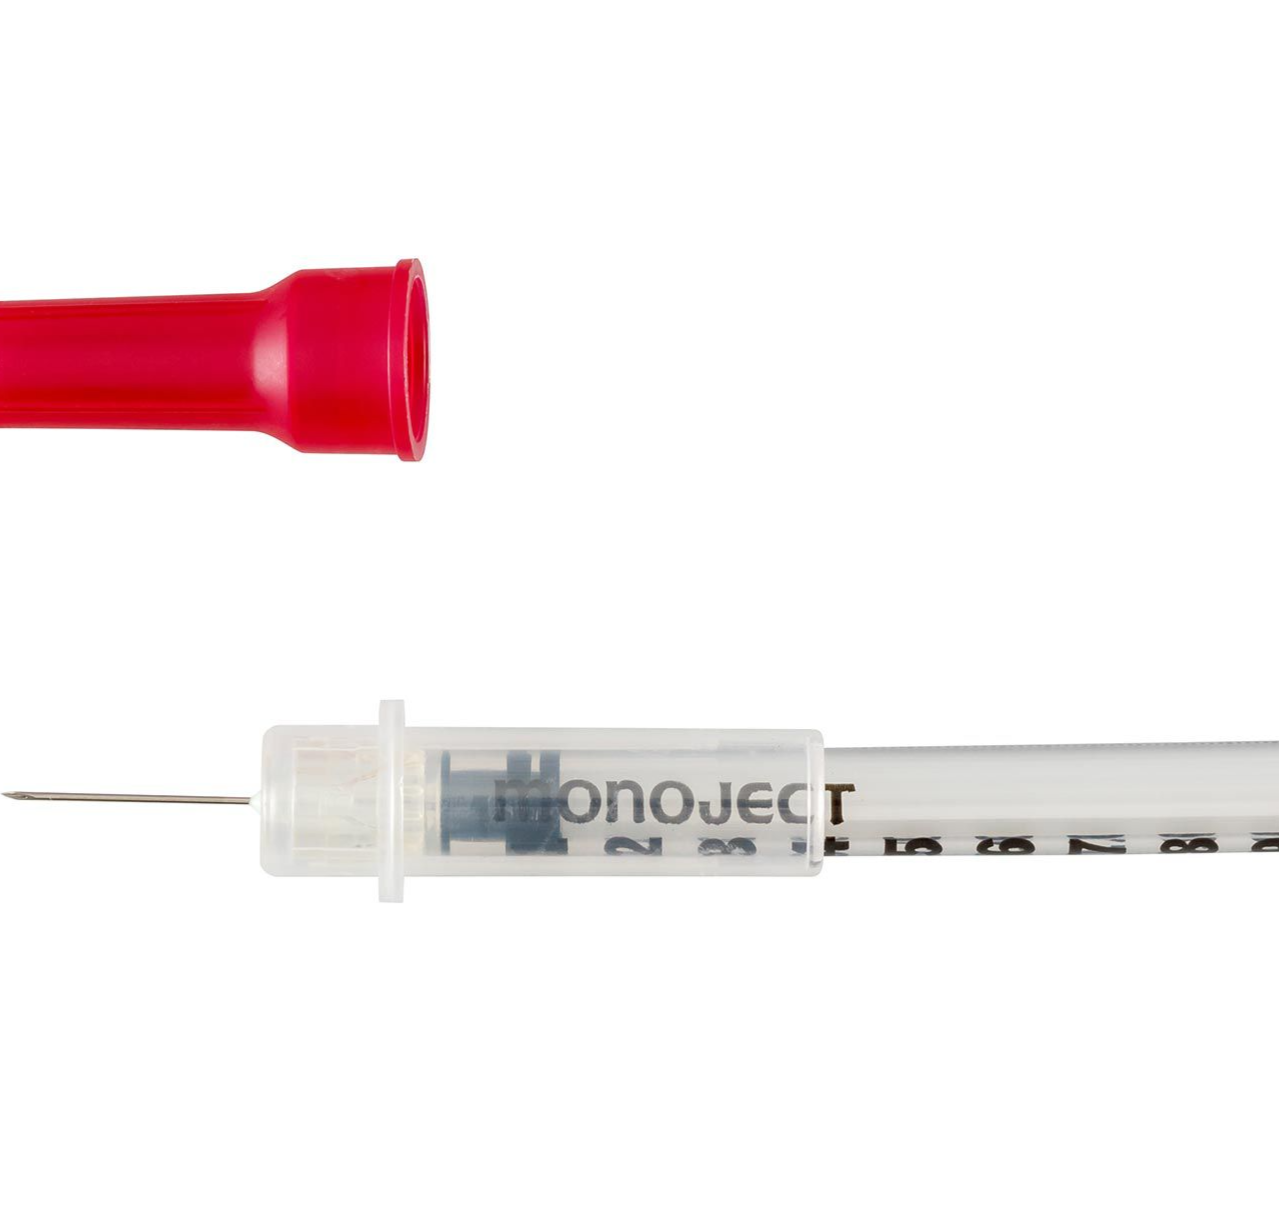 Monoject™ Insulin Safety Syringe  0.5ml with 29G x 1-2" Needle Length